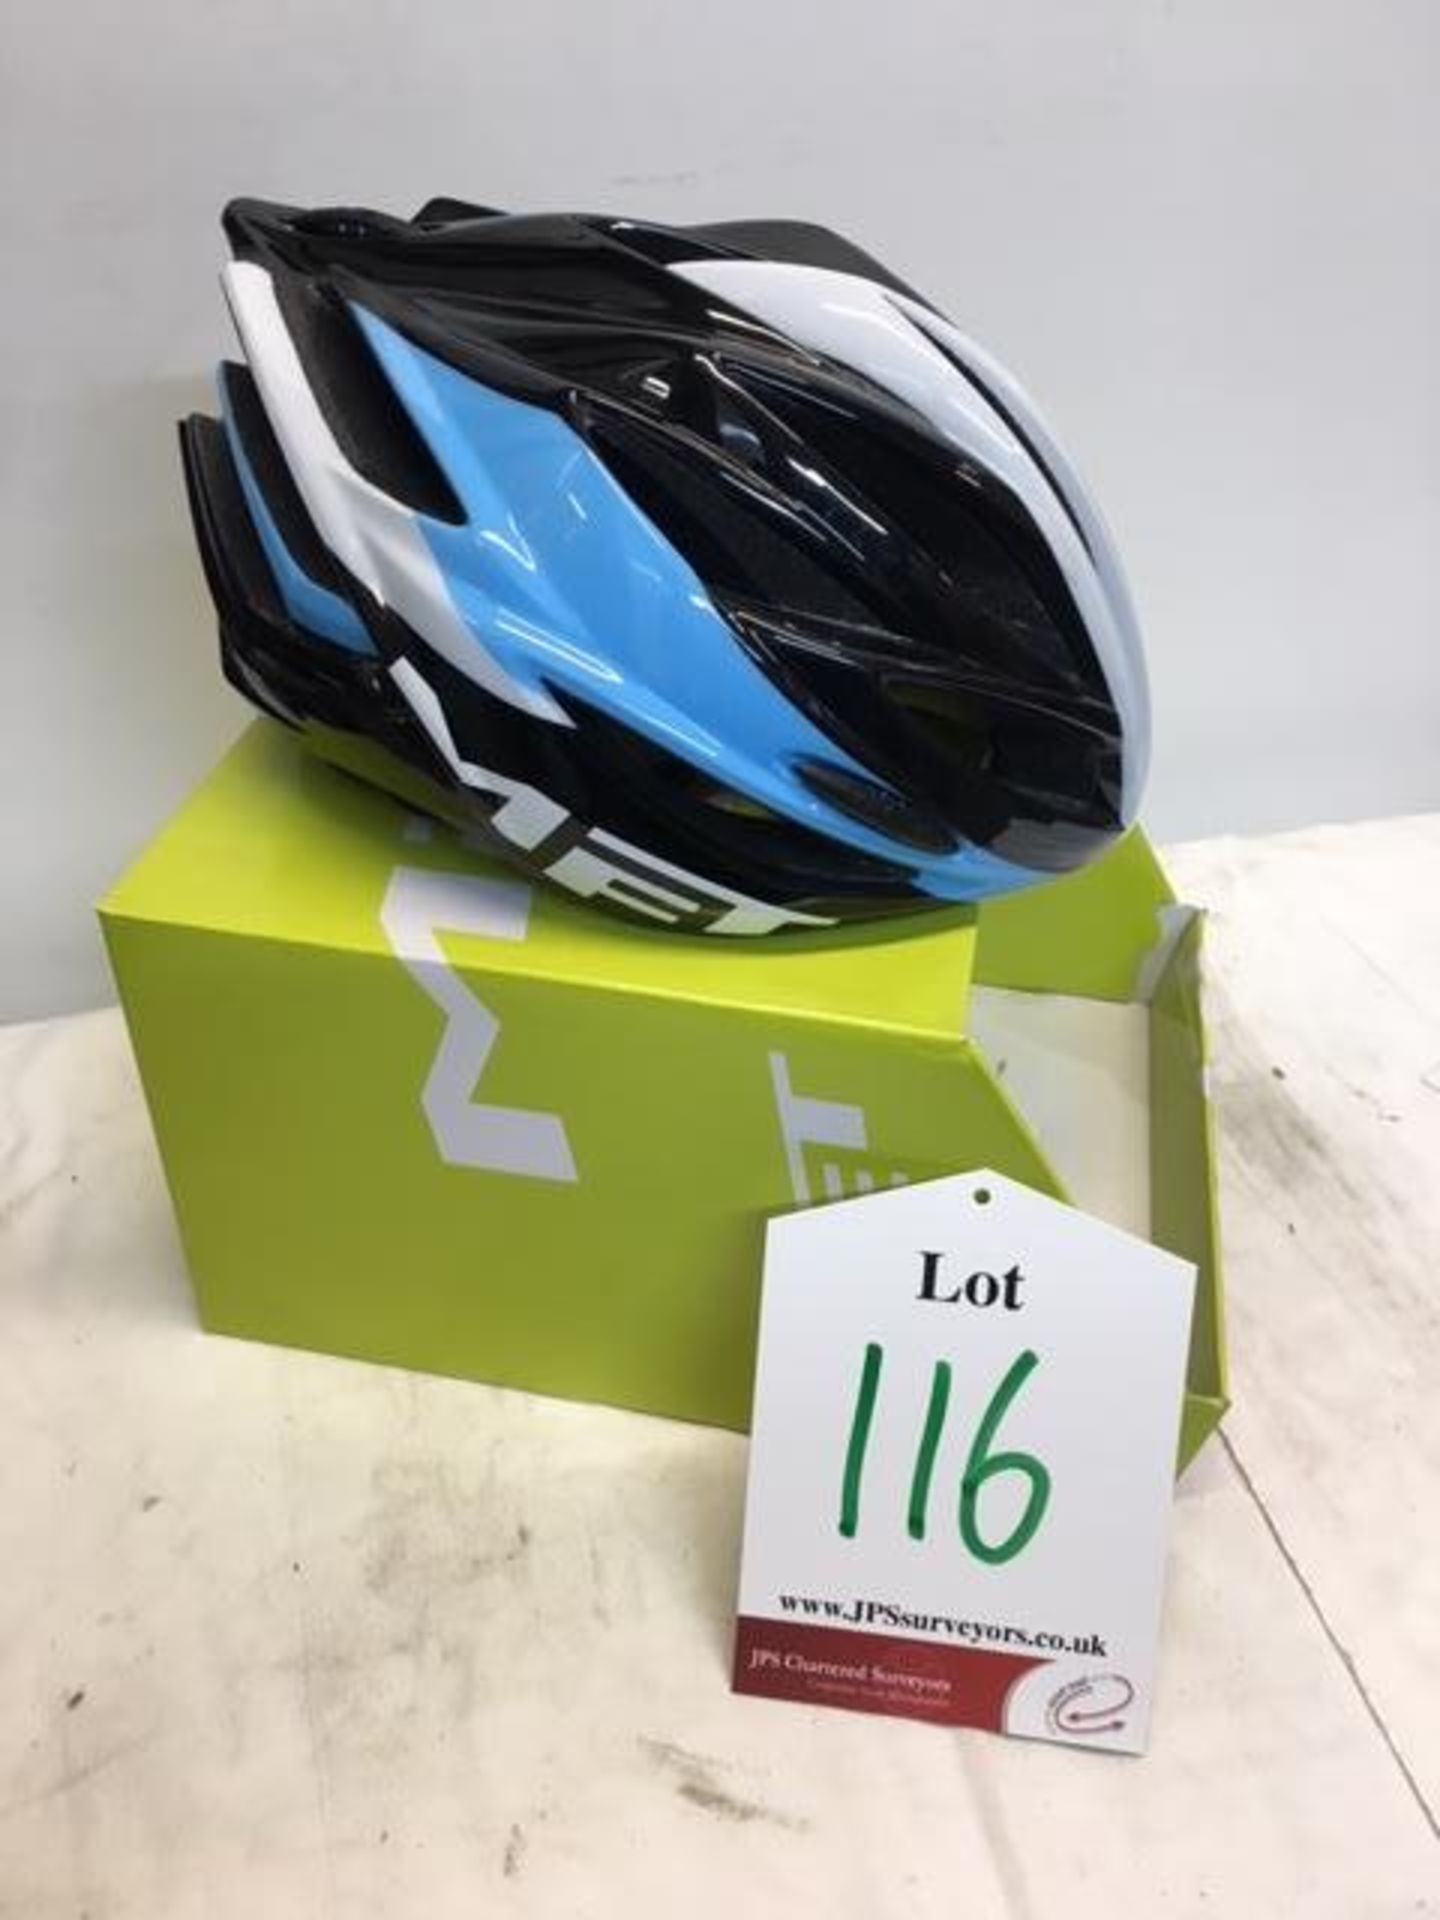 Met-Rx MET Forte Cycling Helmet in Blue/Black | 52-59cm | RRP £50.00